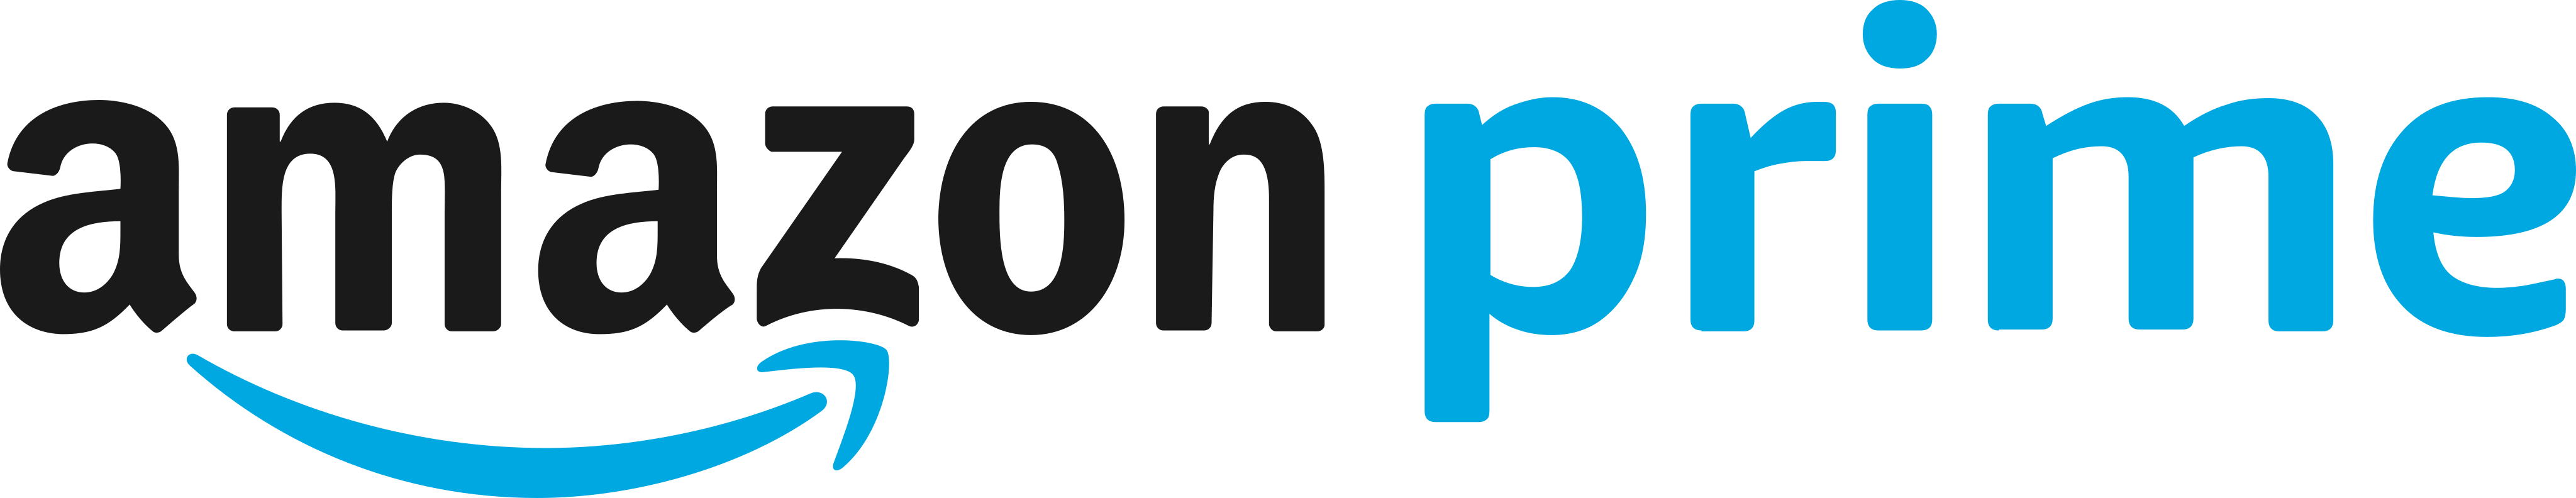 35 Amazon Prime Logo Transparent Logo Icon Source